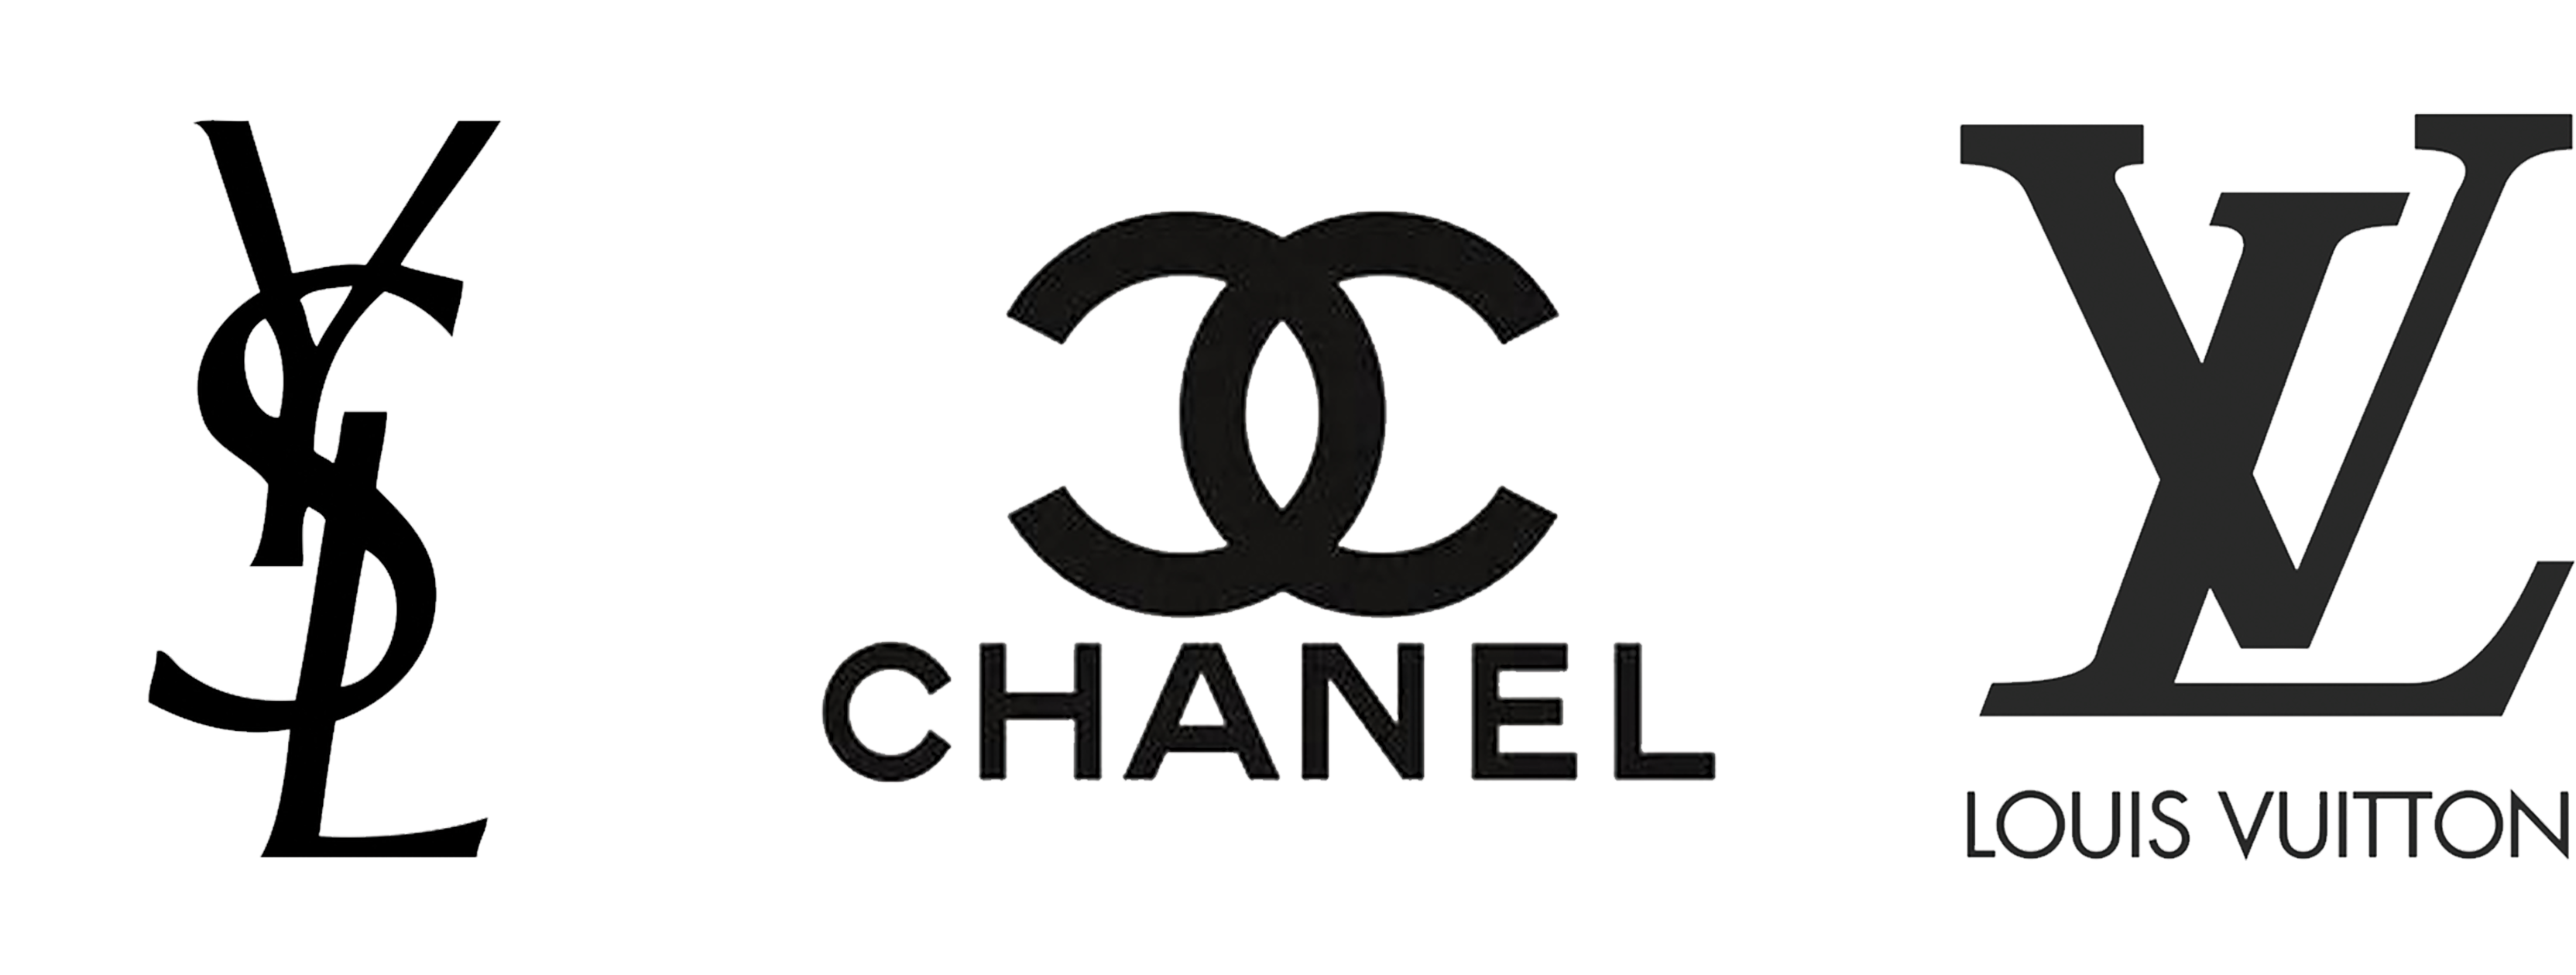 Louis Vuitton Logo Transparent Background